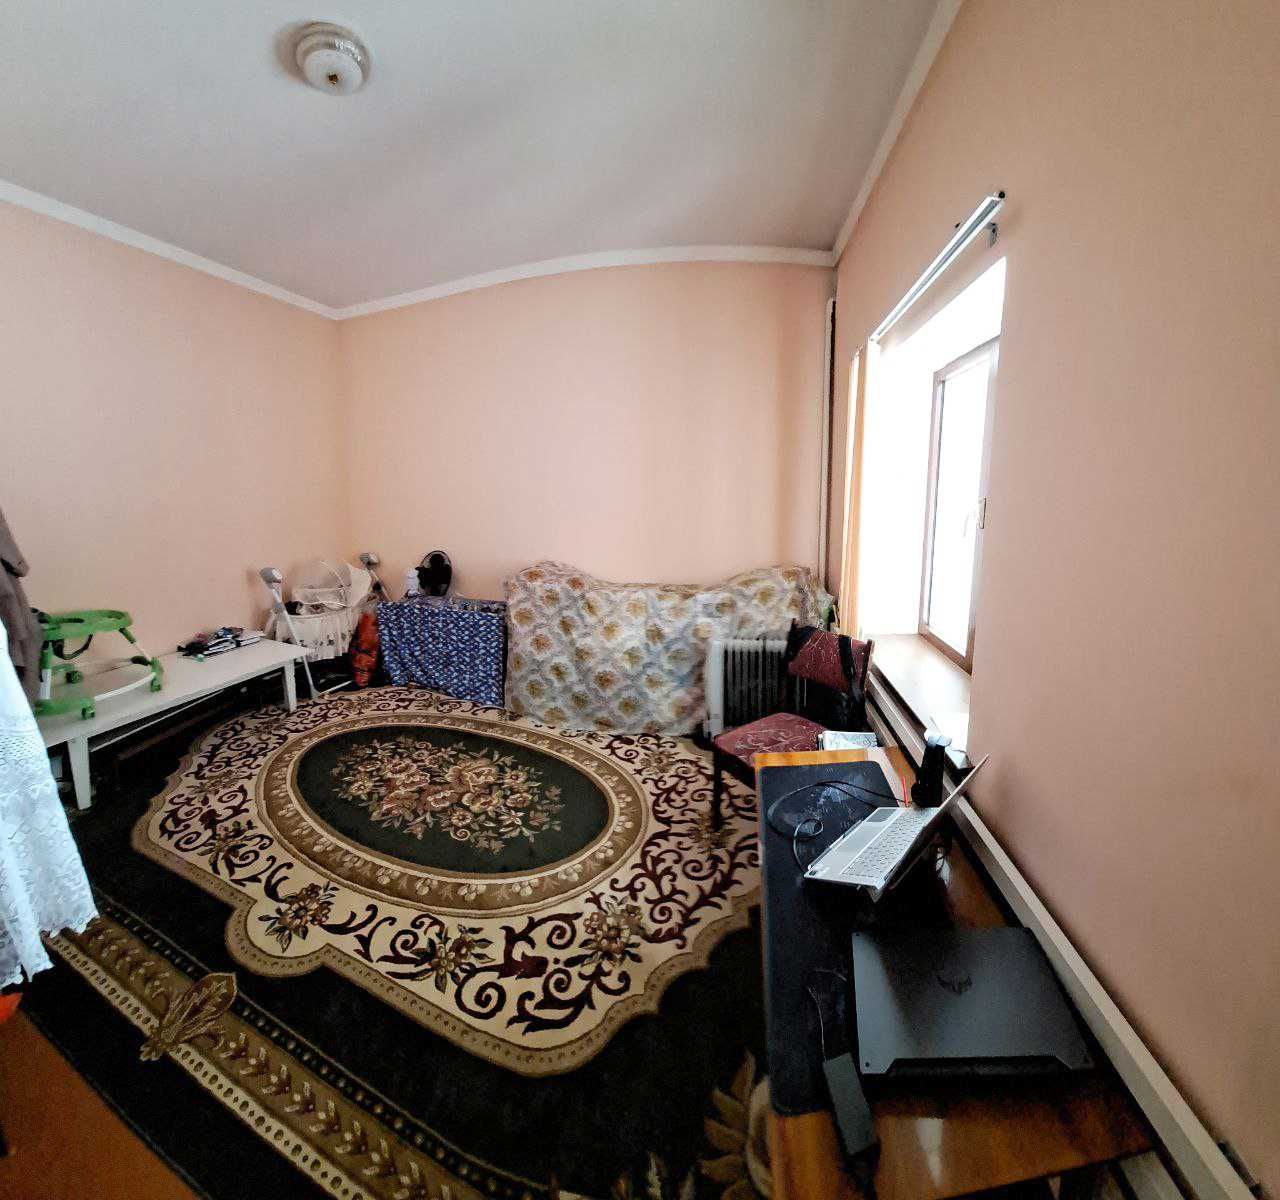 Продается 2х етажный дом в центре города(Ориентир Узгазоил)